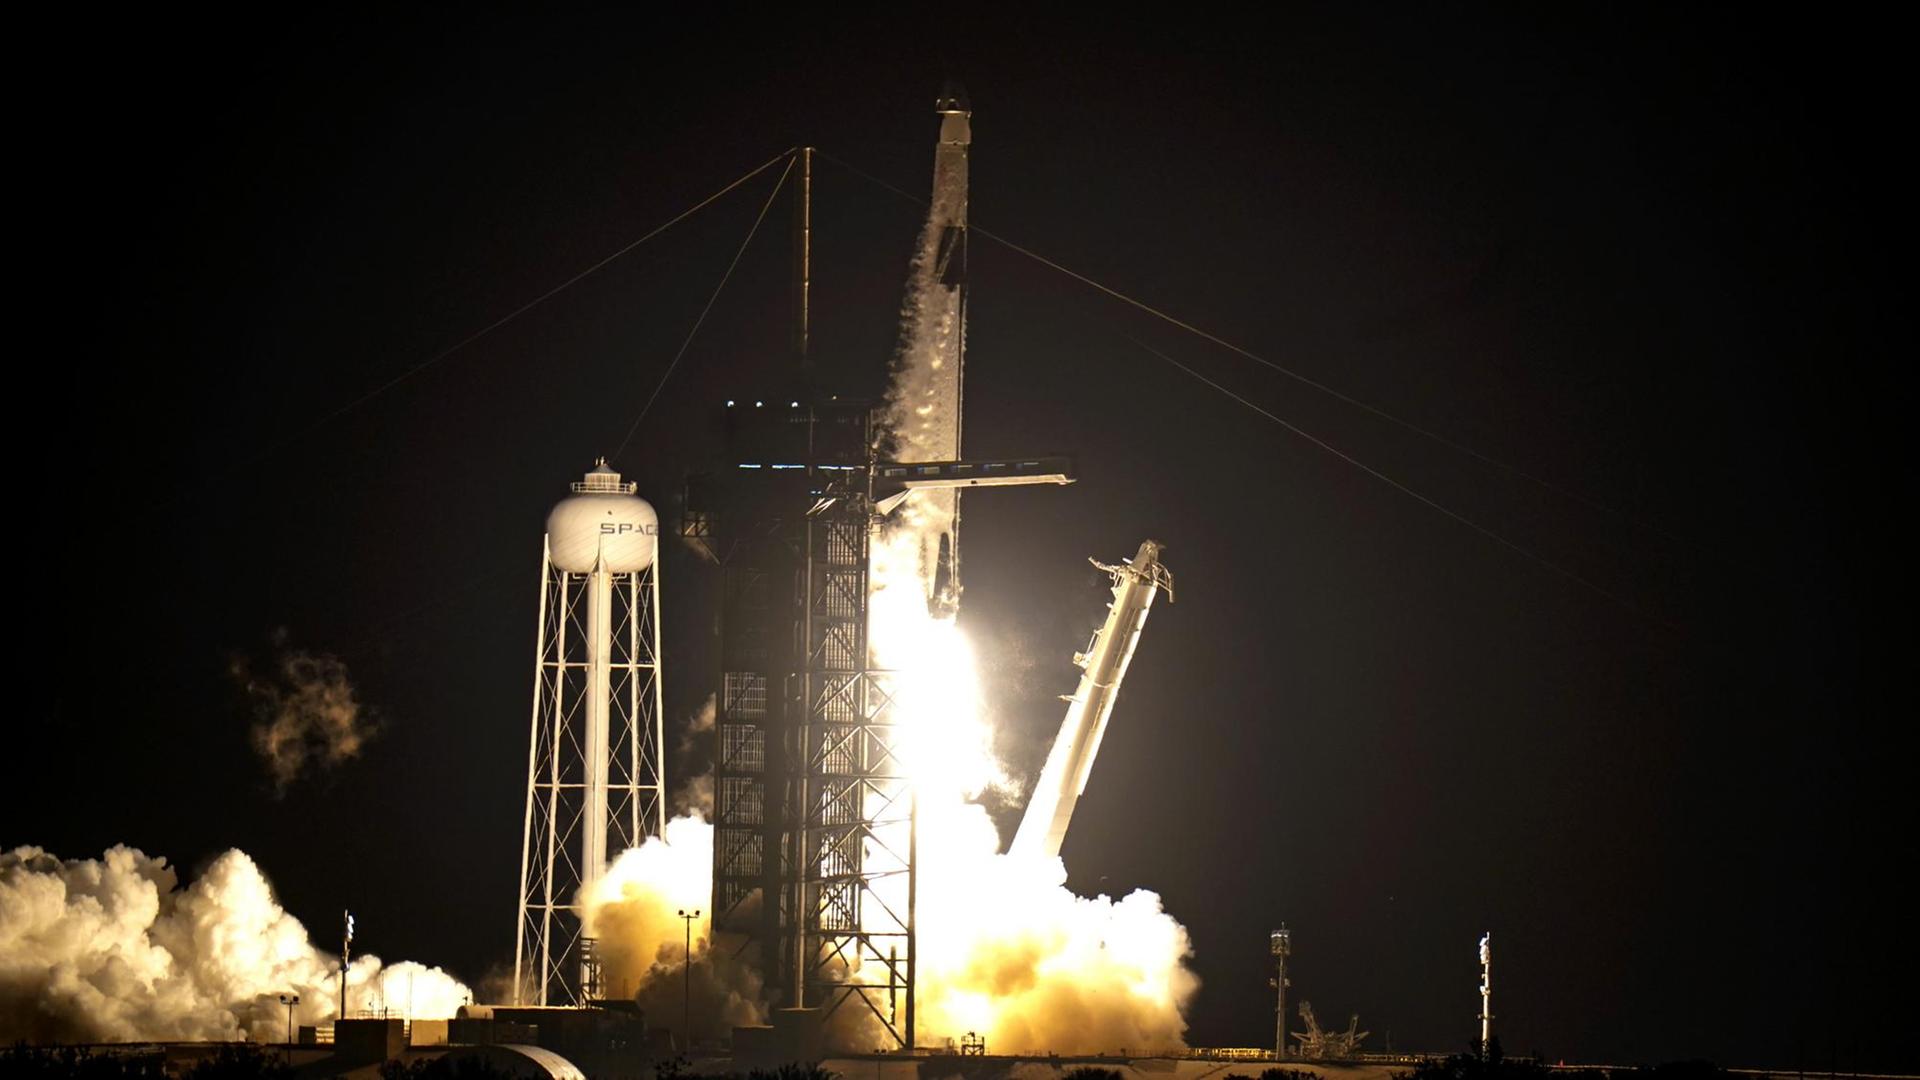 Die SpaceX-Rakete ist in der Nacht zur ISS gestartet.